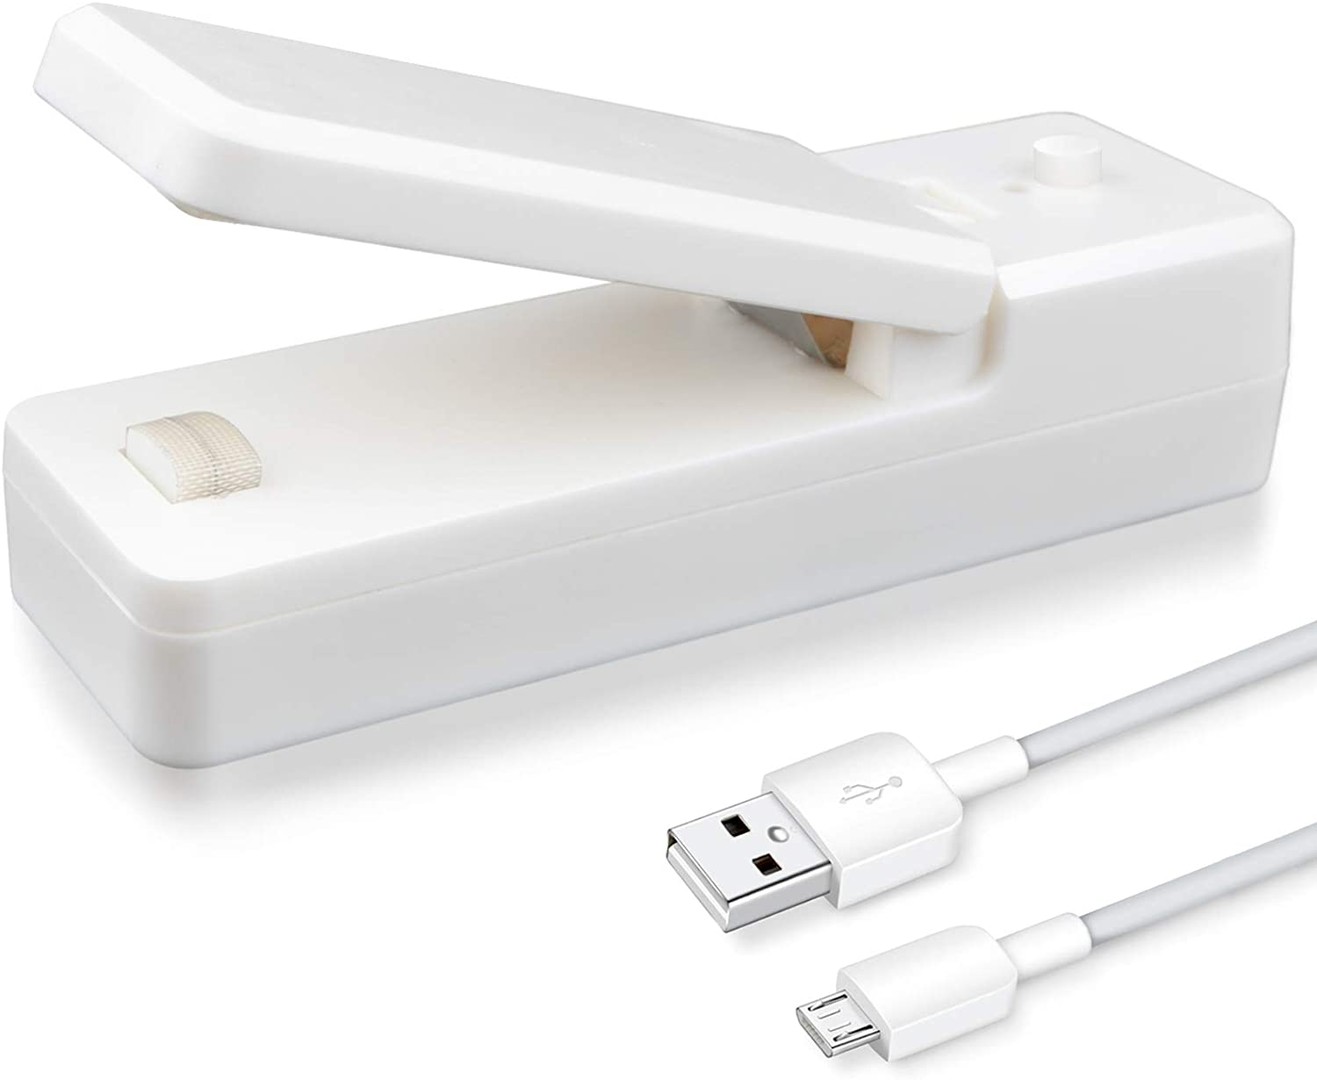 accesorios para electronica - Mini máquina selladora portátil de carga USB para fundas bolsas plasticas 2